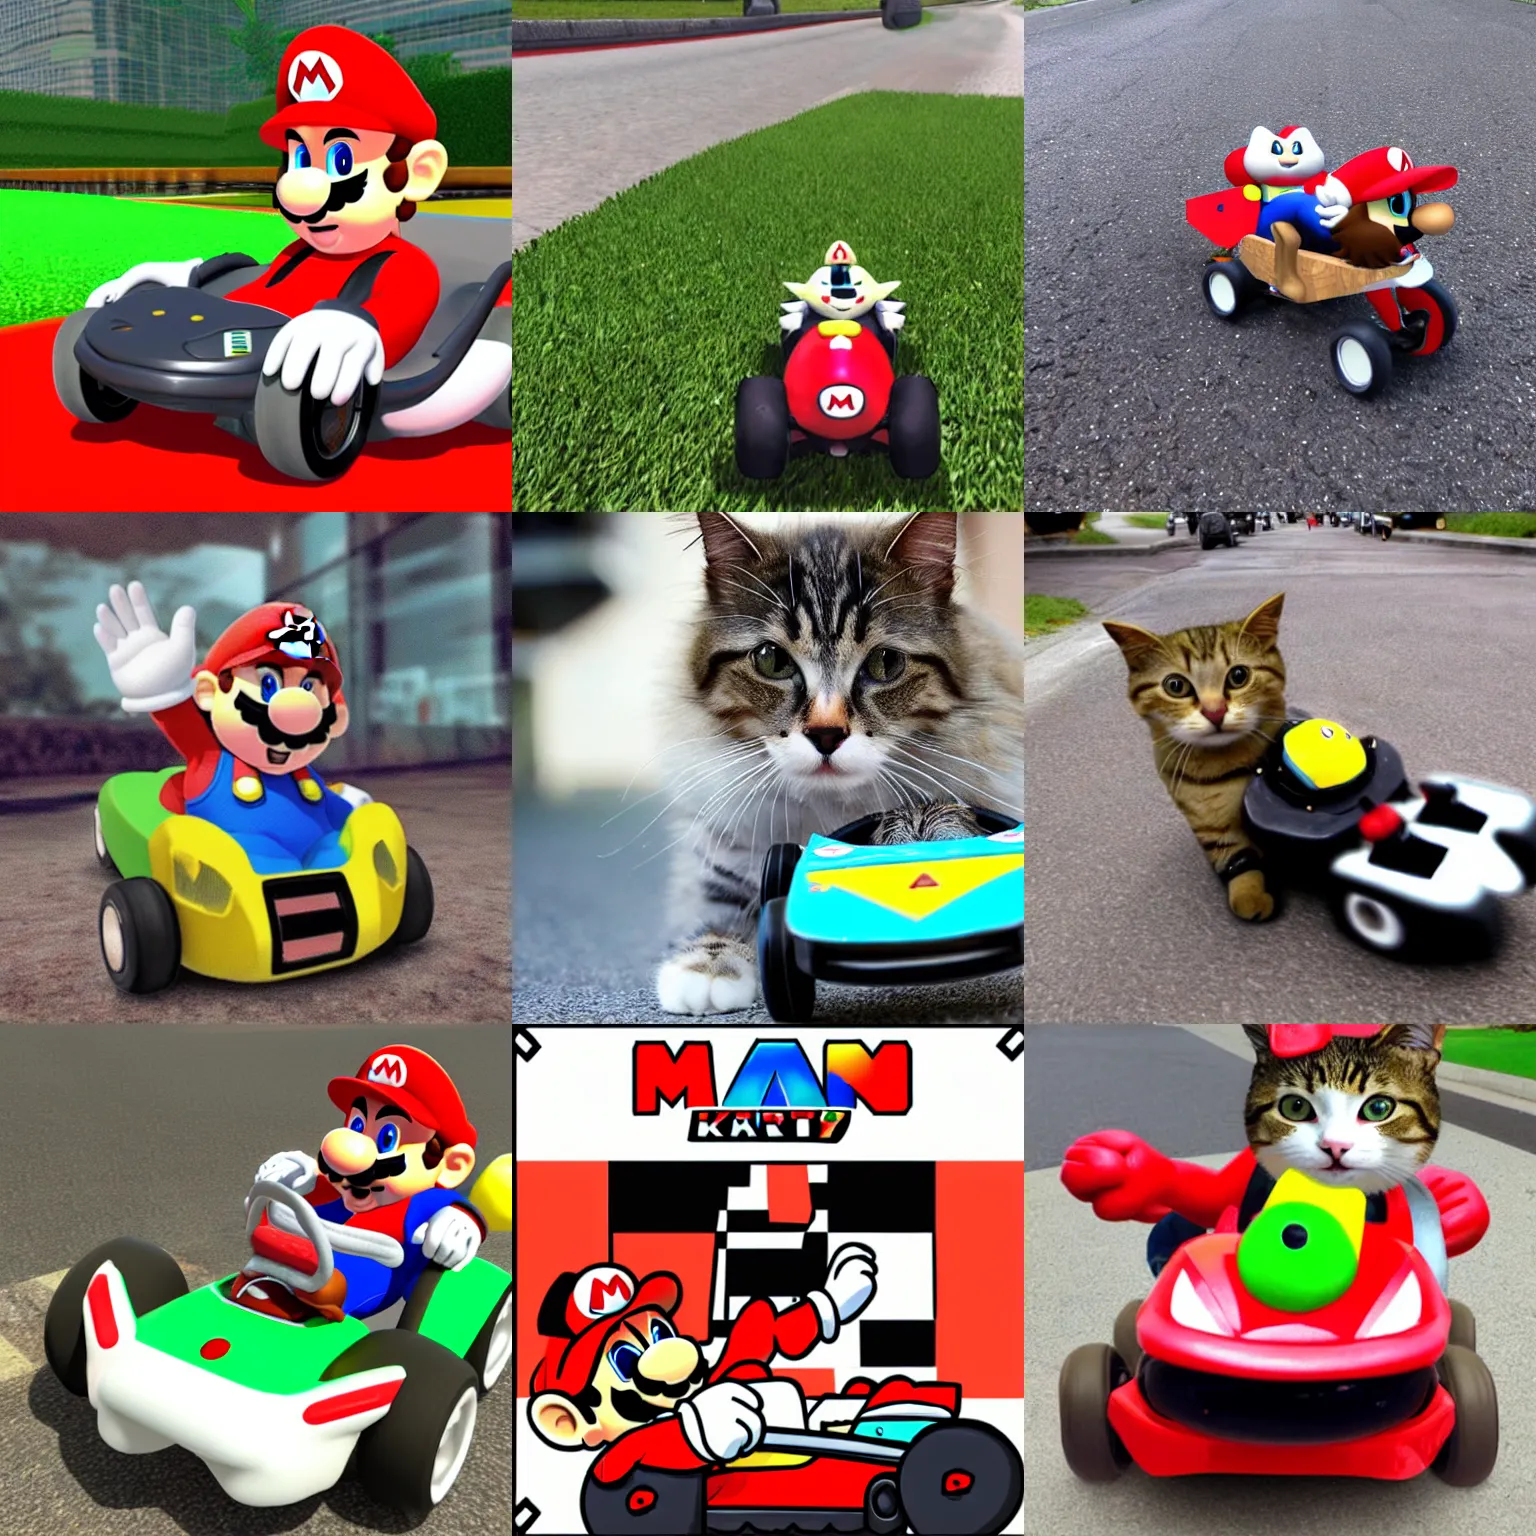 Prompt: Mario Kart Cat Mario